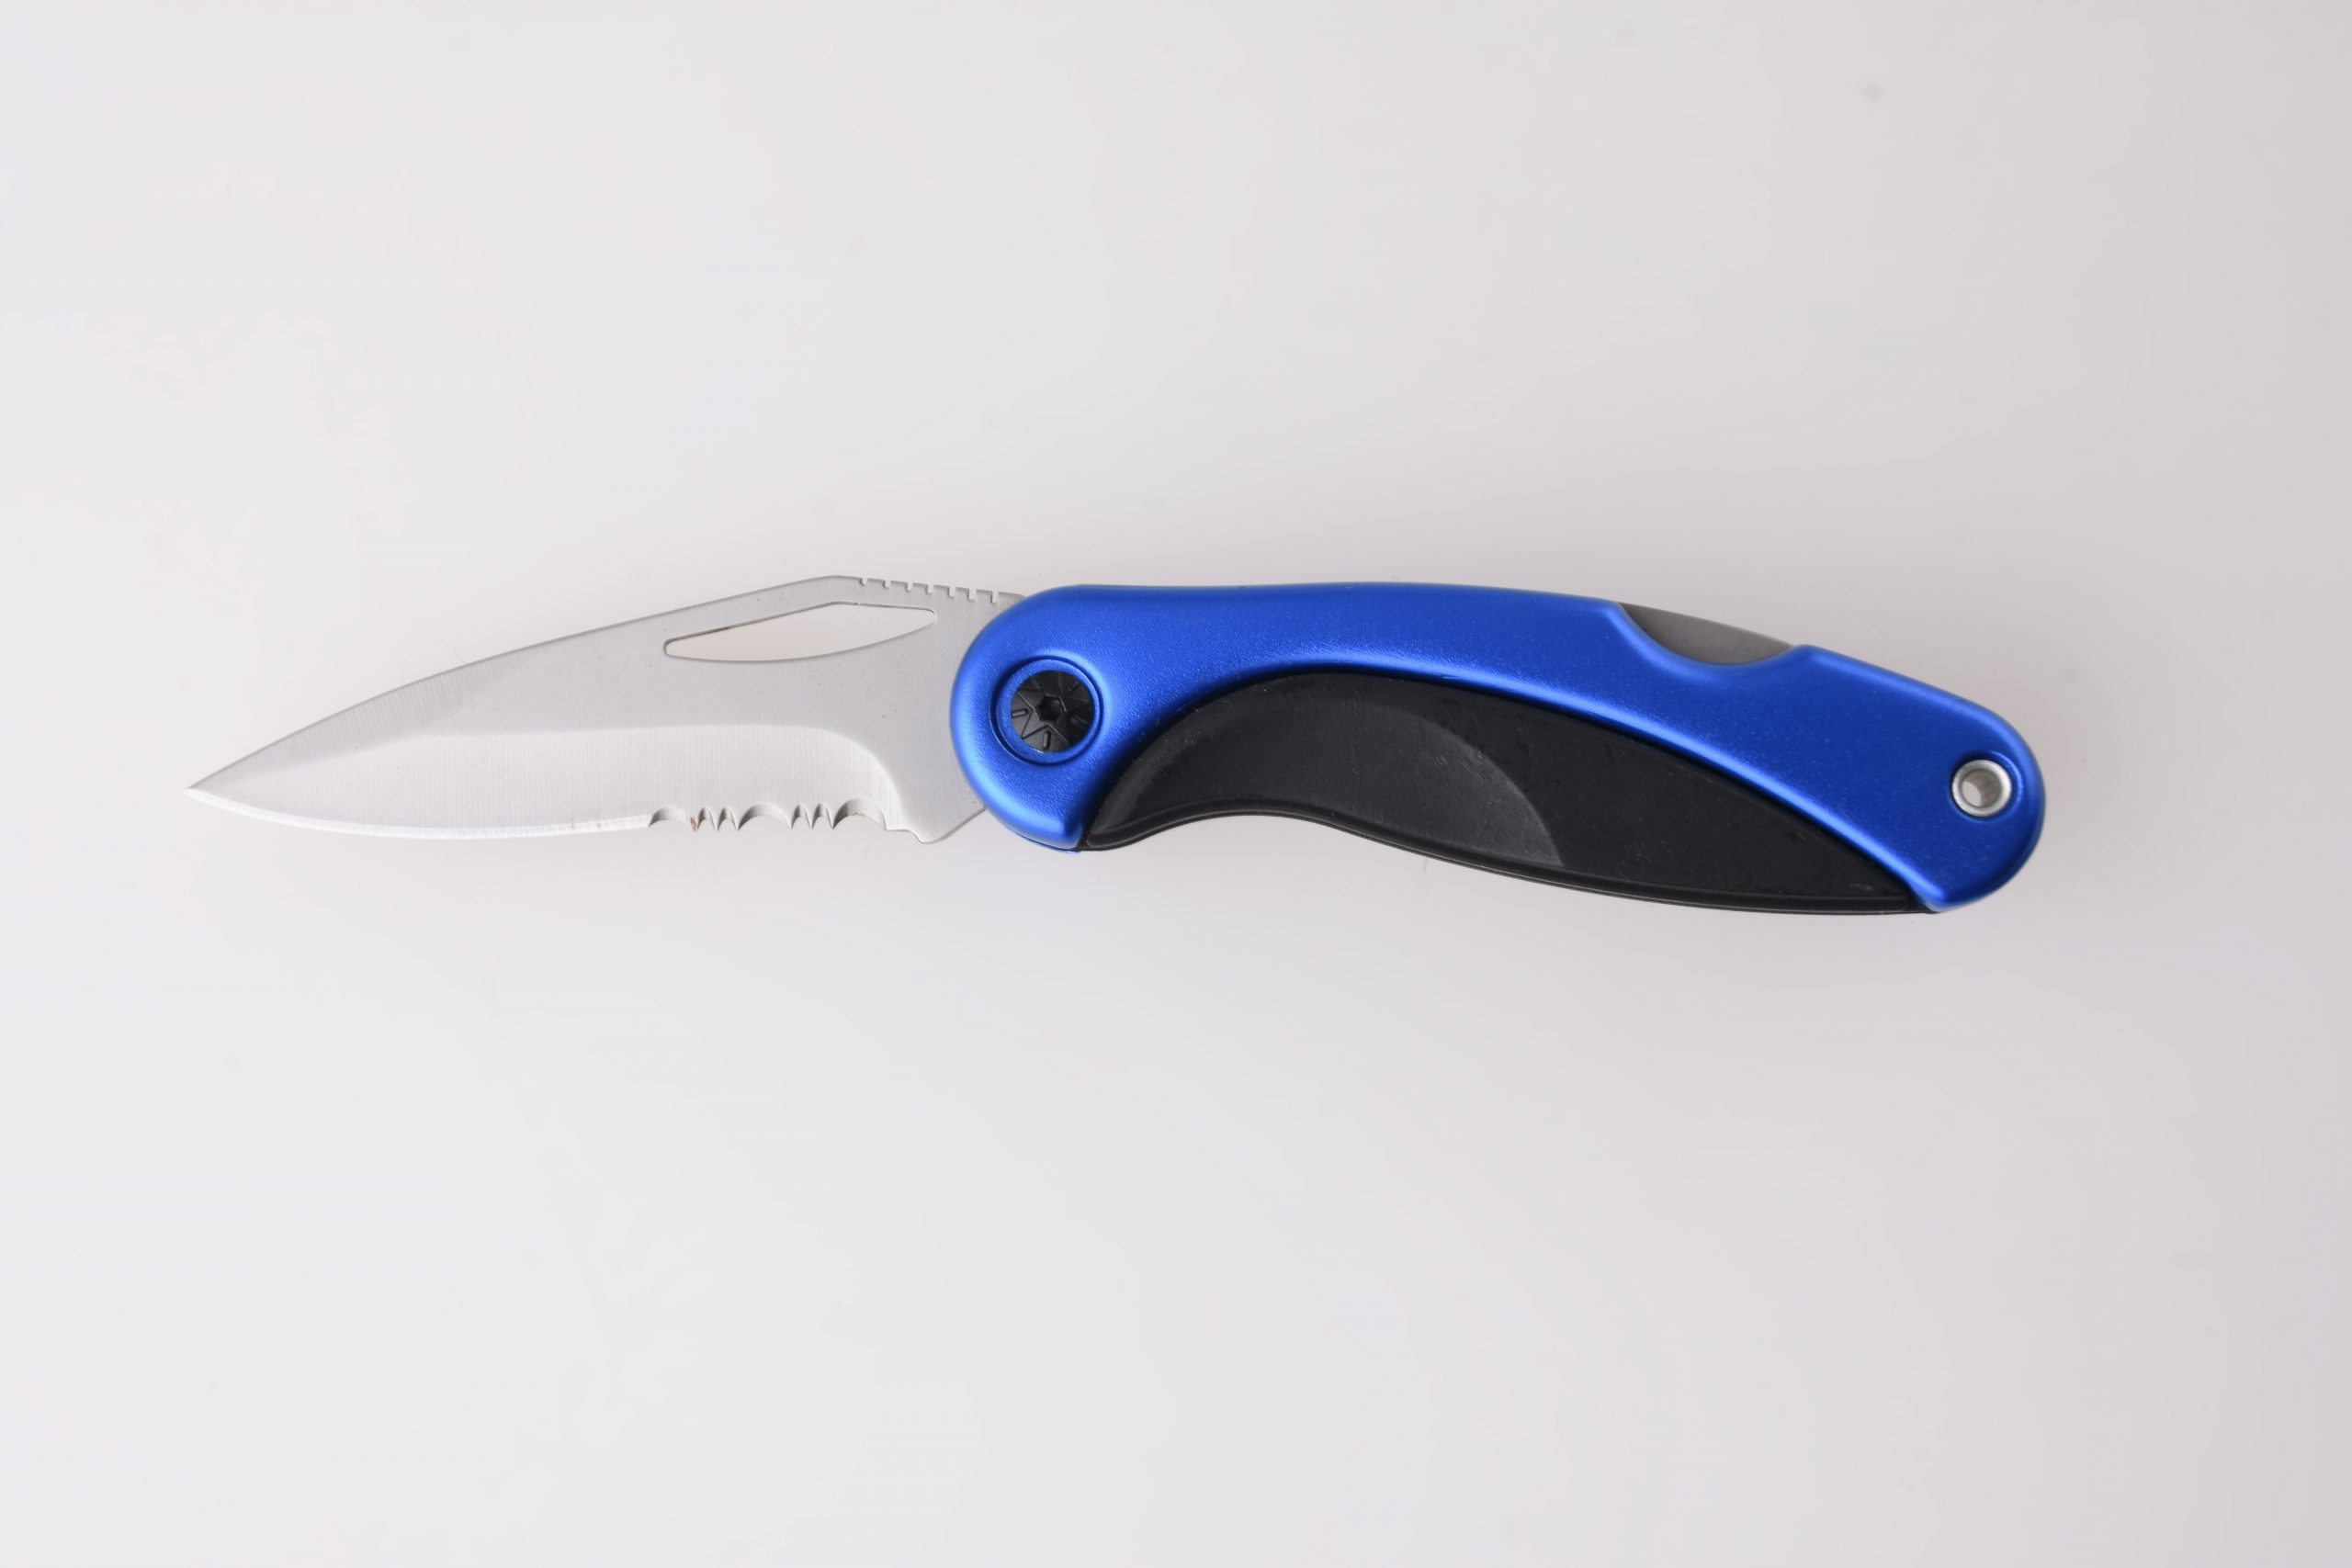 OEM Lipat pisau baja tahan karat lapisan biru + PP menangani kuncian pisau bergerigi HF-KS19